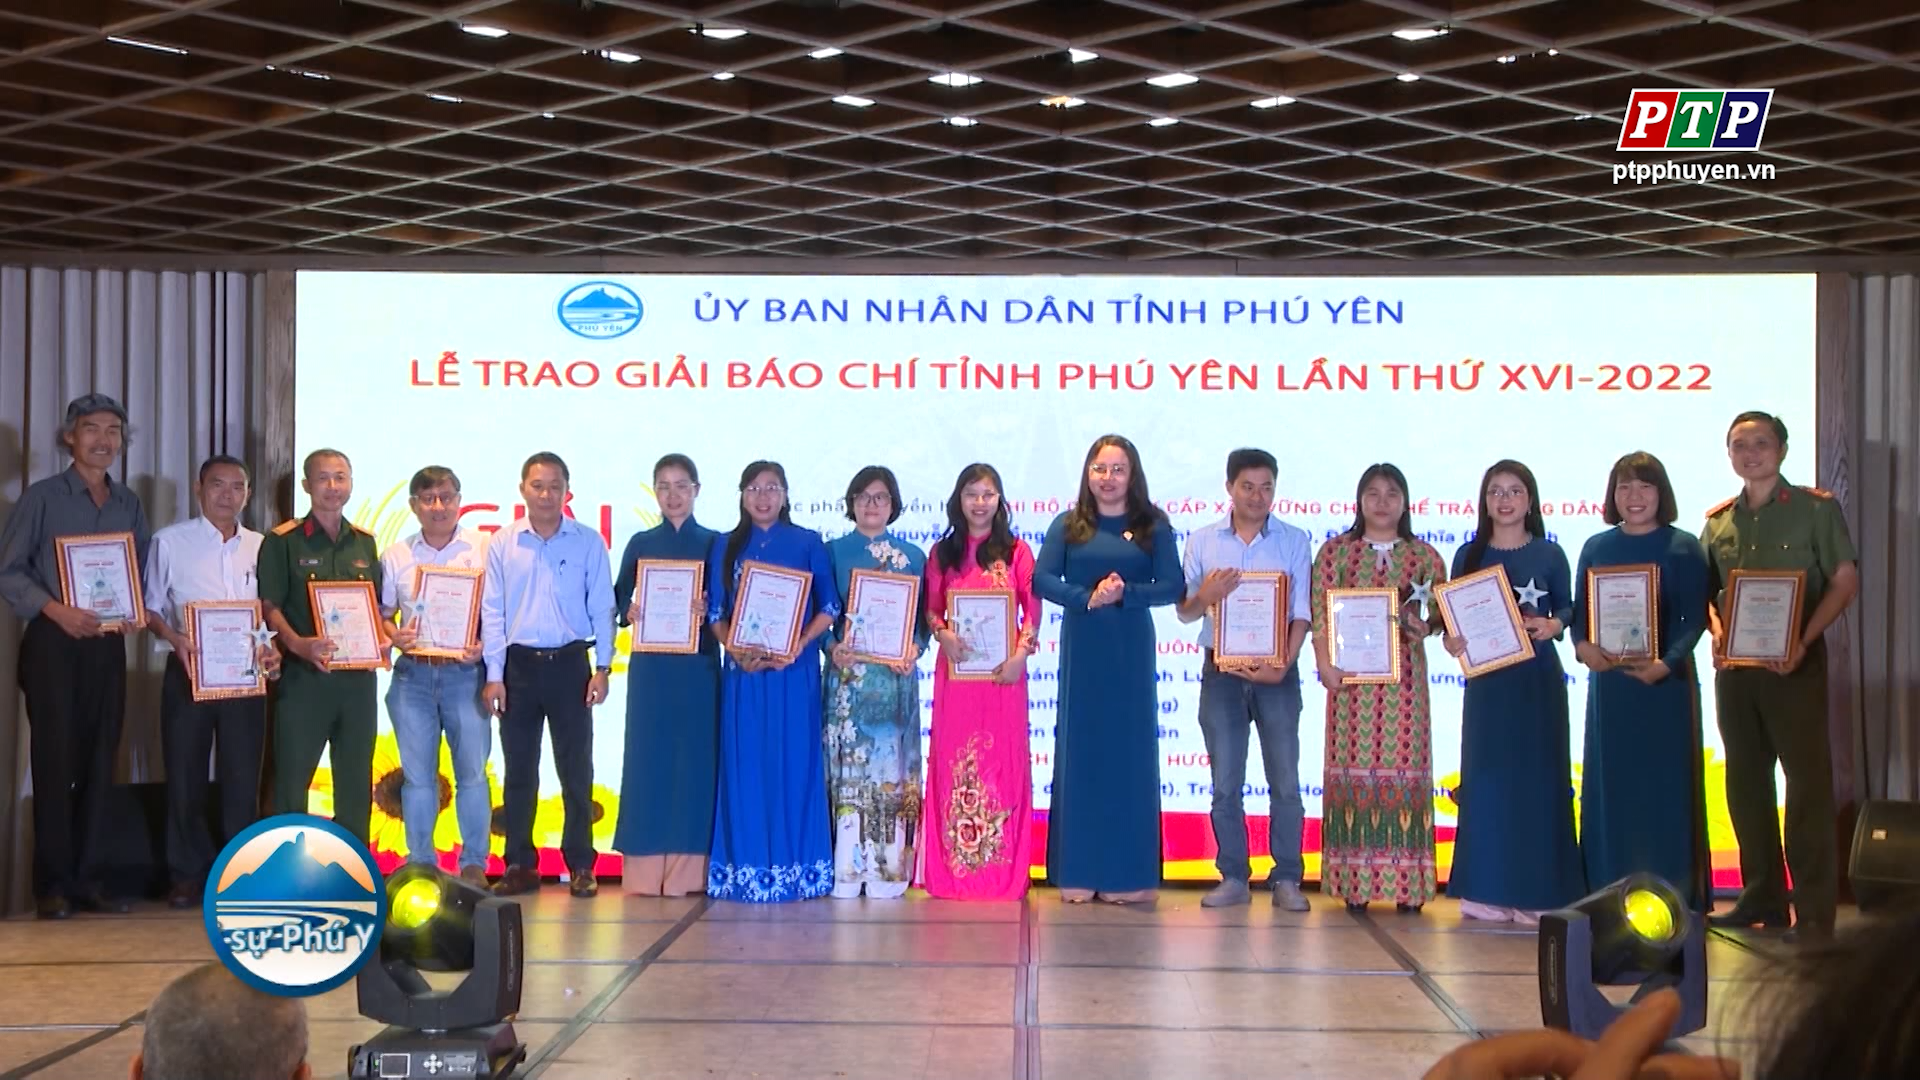 Kỷ niệm 98 năm Ngày Báo chí cách mạng Việt Nam và Trao giải thưởng báo chí tỉnh Phú Yên năm 2022